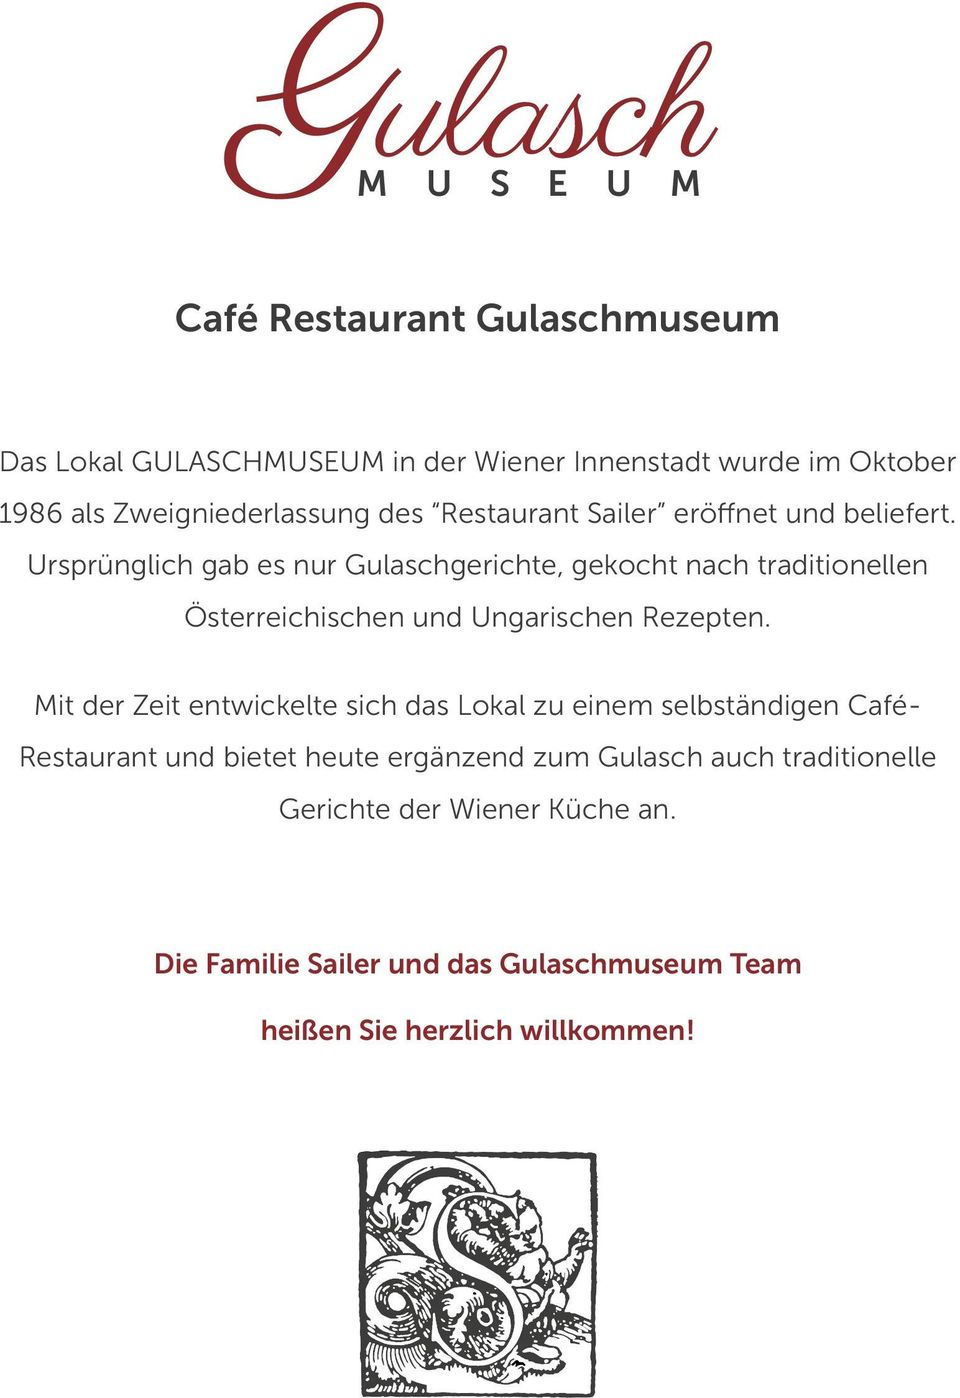 Ursprünglich gab es nur Gulaschgerichte, gekocht nach traditionellen Österreichischen und Ungarischen Rezepten.